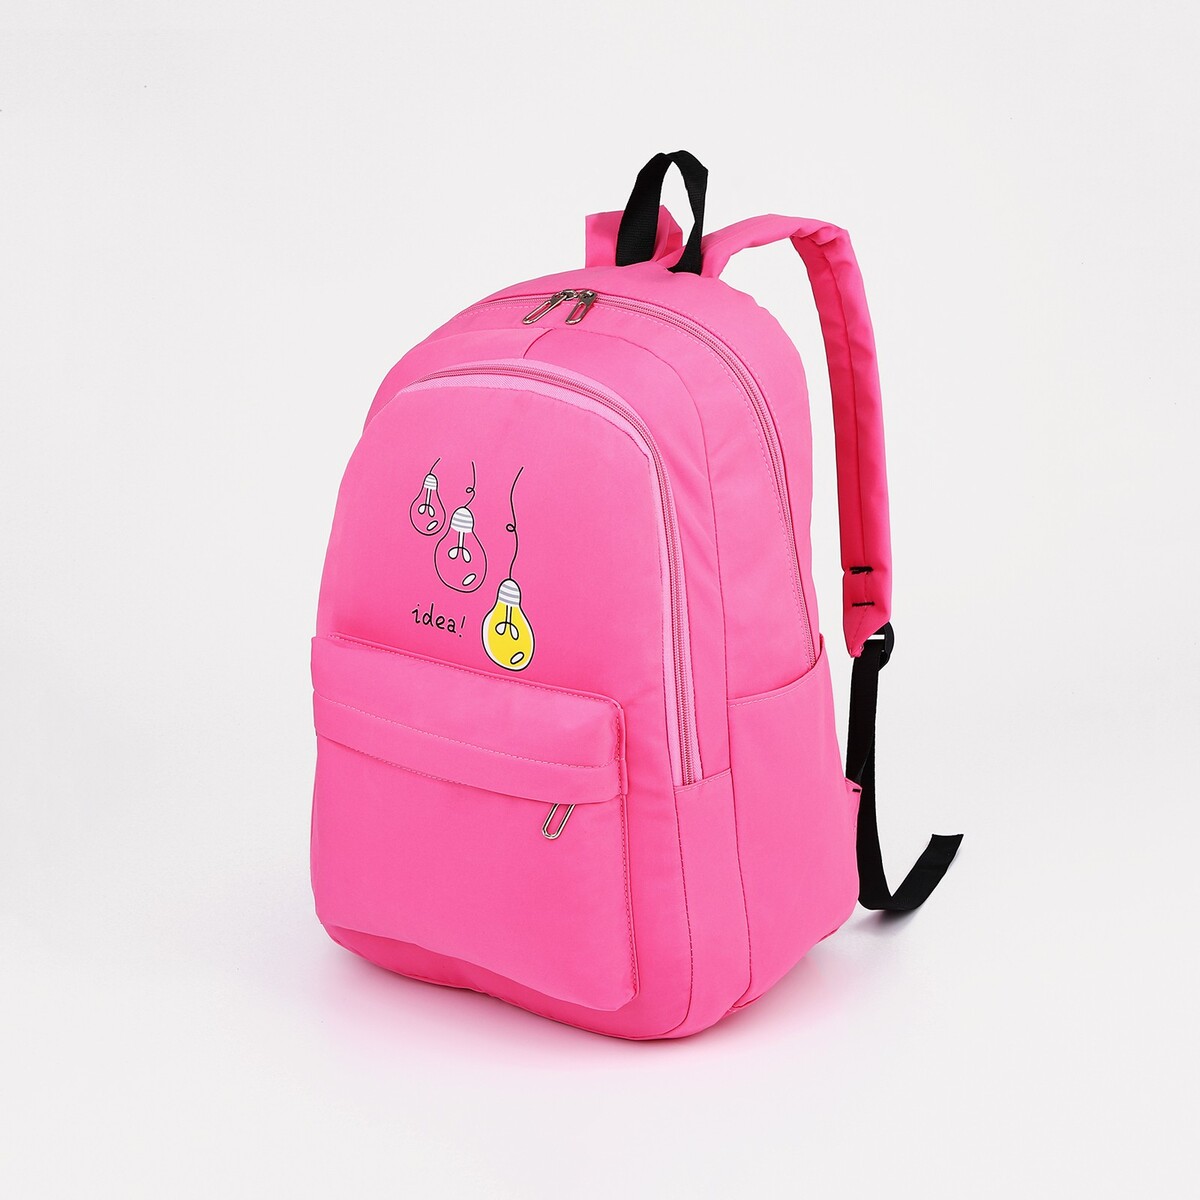 Рюкзак молодежный из текстиля, 2 отдела на молниях, 3 кармана, цвет малиновый косметичка 2 отдела на молниях розовый